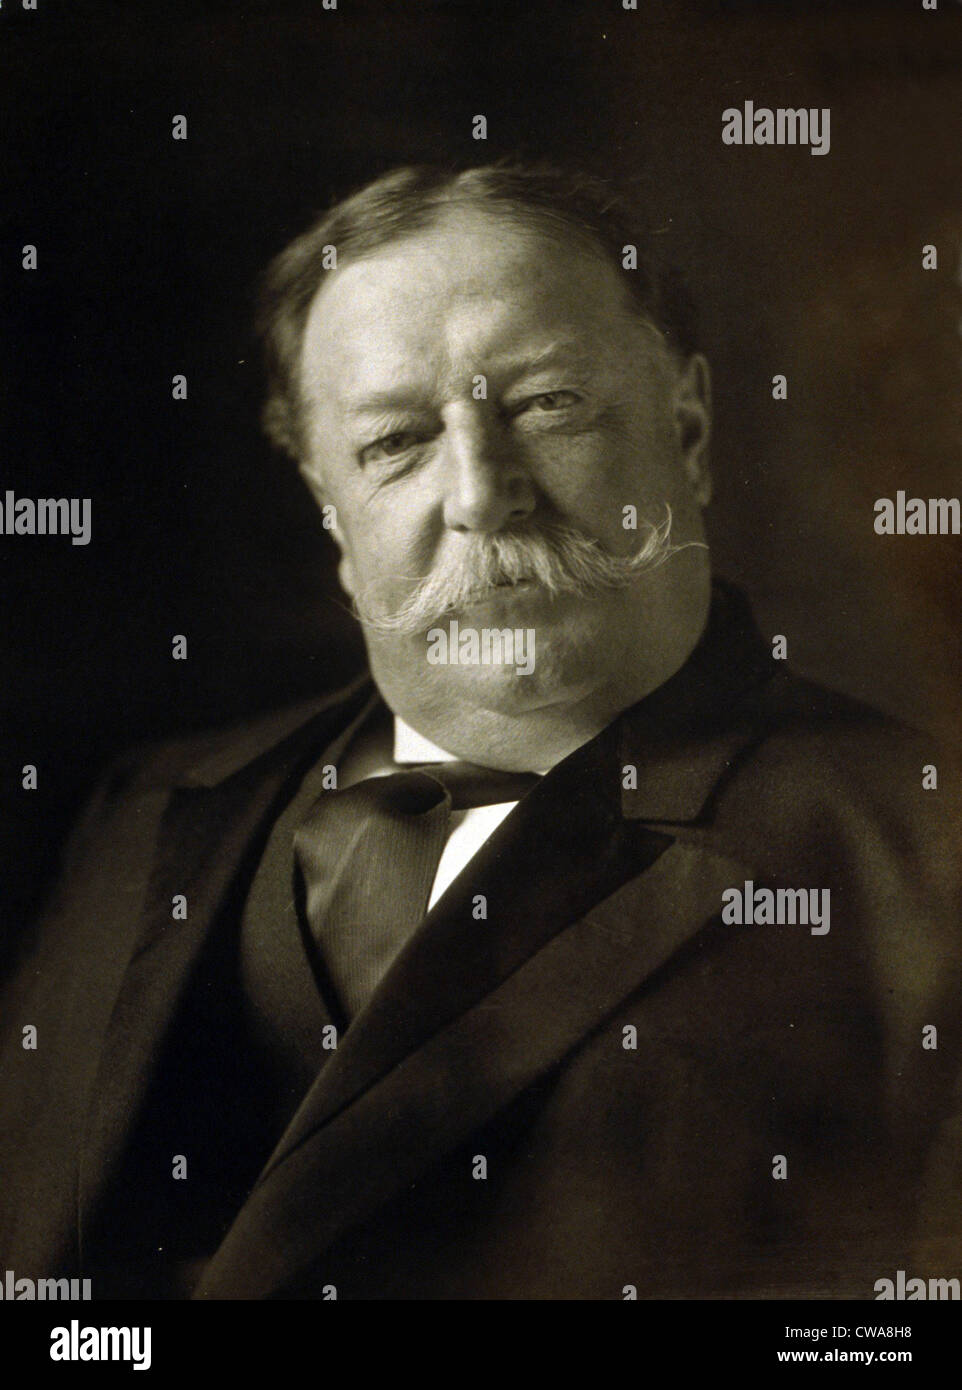 Le président William Taft (1857-1930) dans un portrait réalisé le 11 mars 1909, juste après son investiture à la présidence des États-Unis. Banque D'Images